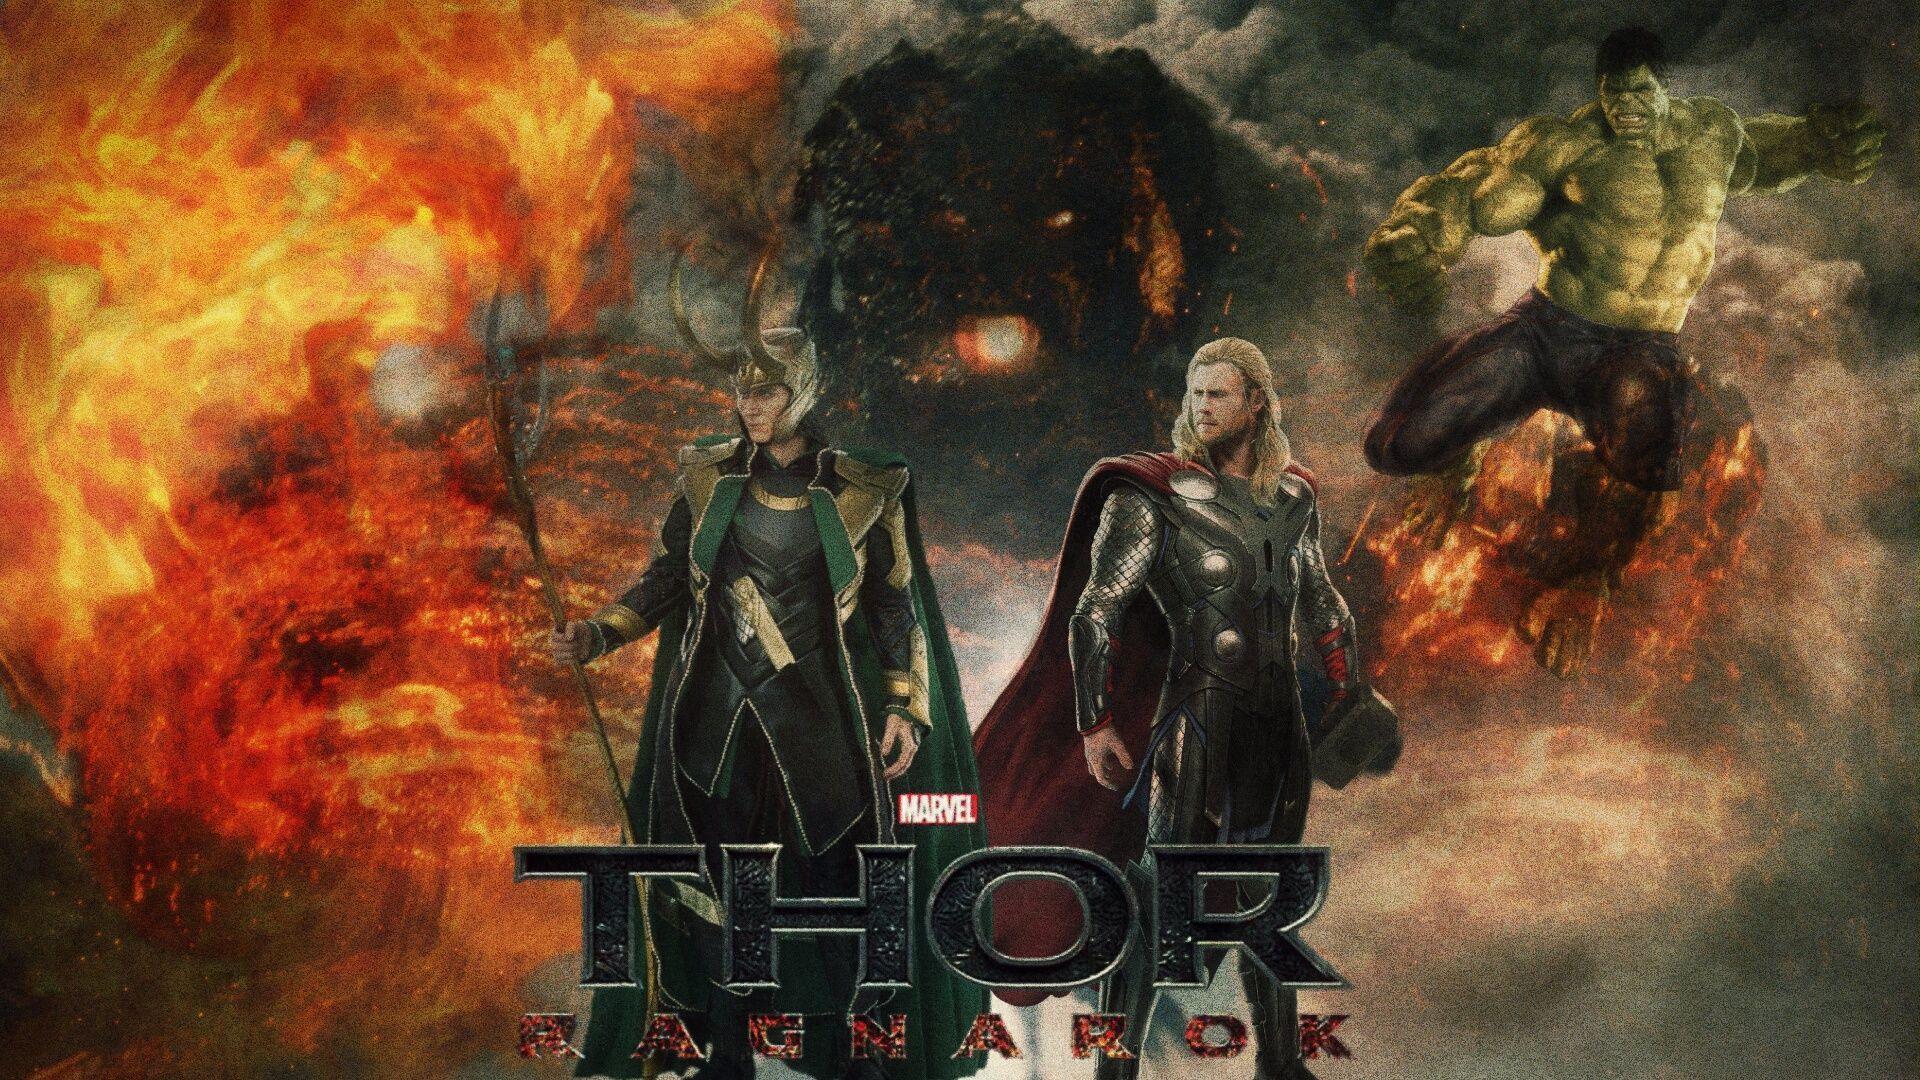 Thor Ragnarok HD Image 7 whb #ThorRagnarokHDimage #ThorRagnarok